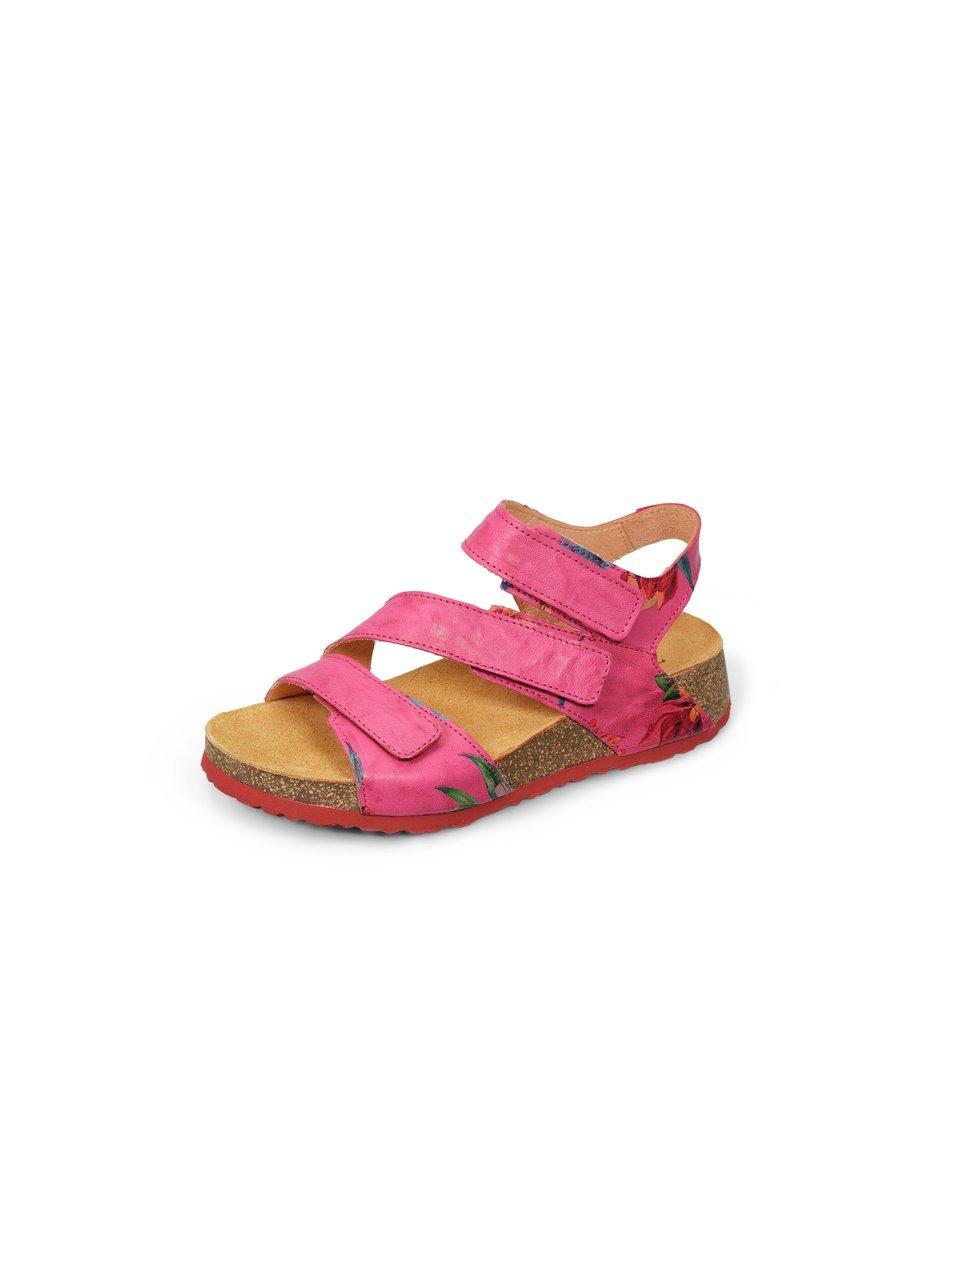 Platform sandals Koak Think! bright pink